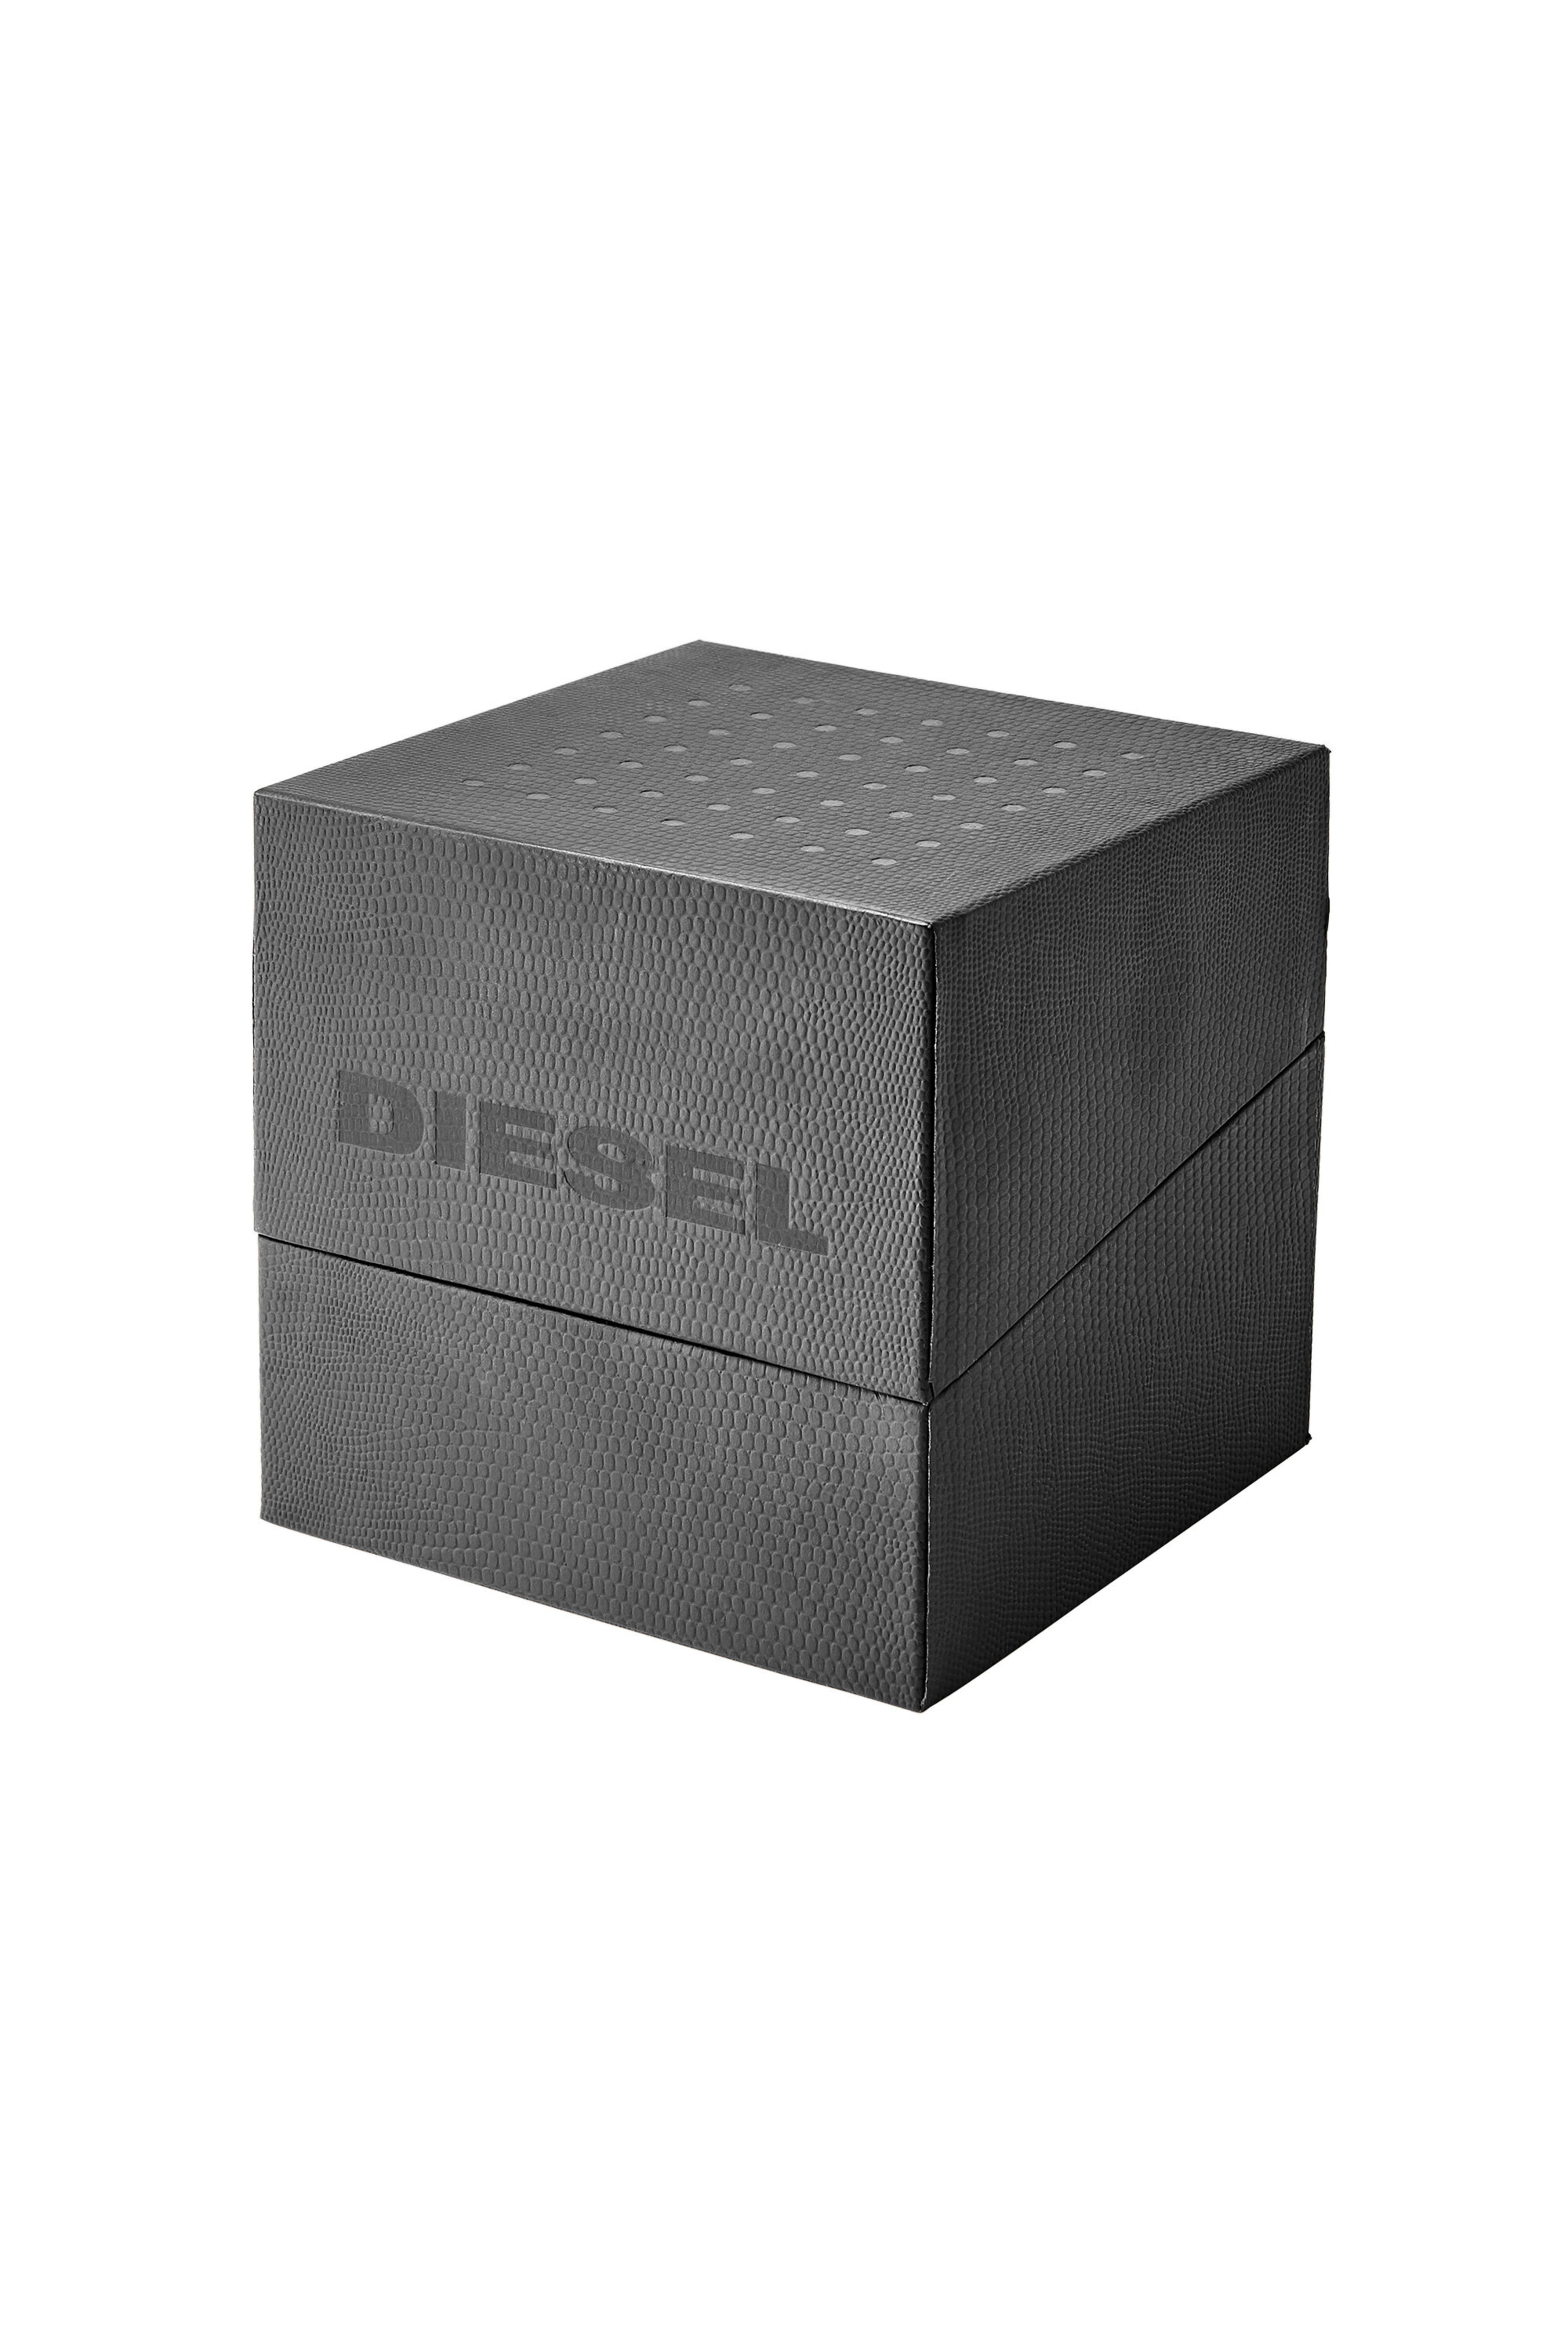 Diesel - DZ4524, Nero - Image 4